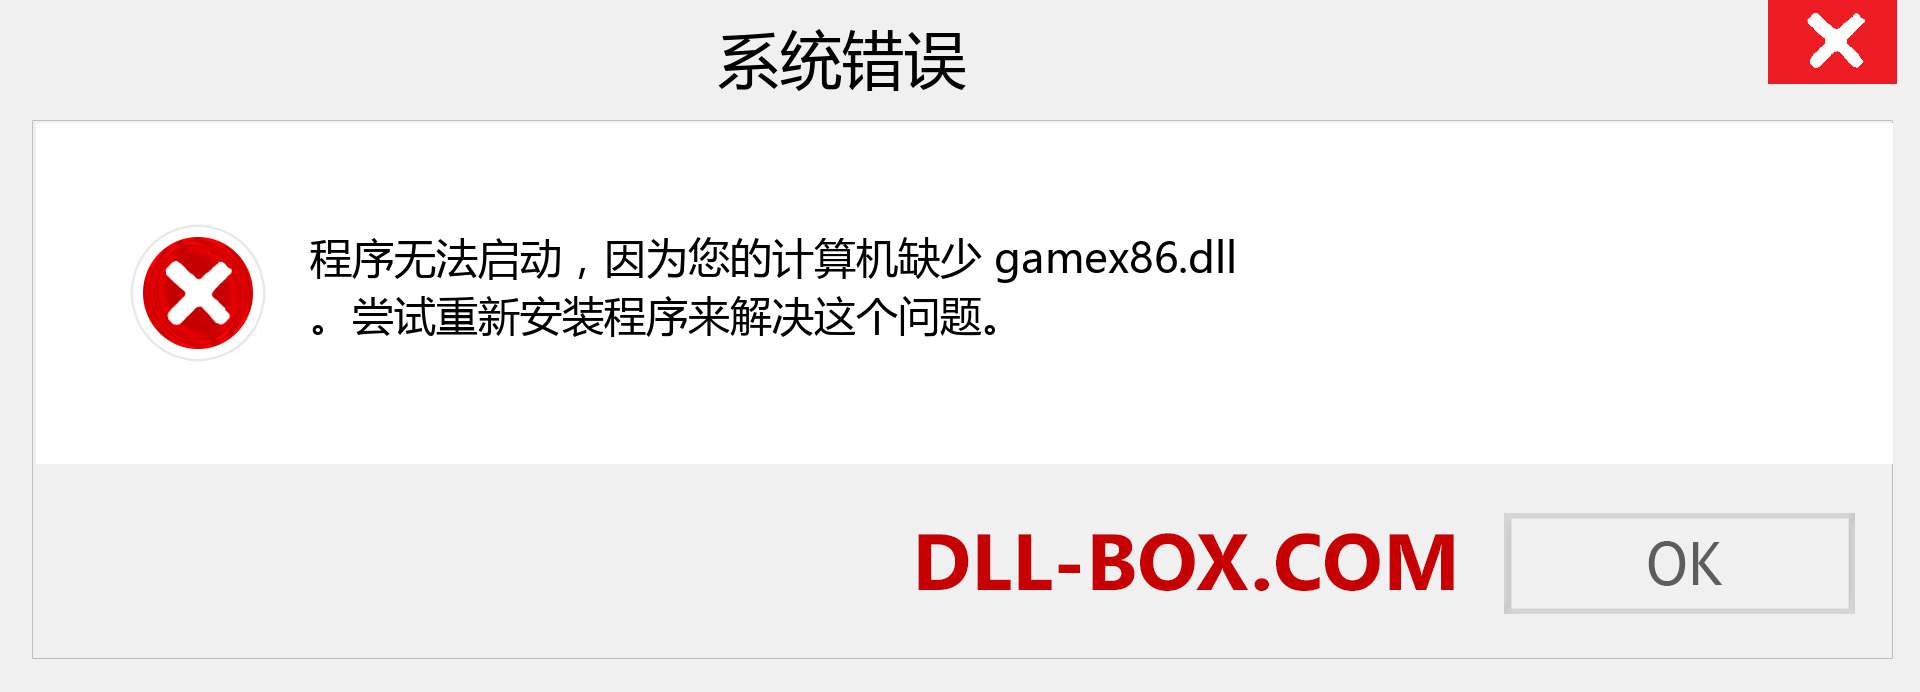 gamex86.dll 文件丢失？。 适用于 Windows 7、8、10 的下载 - 修复 Windows、照片、图像上的 gamex86 dll 丢失错误